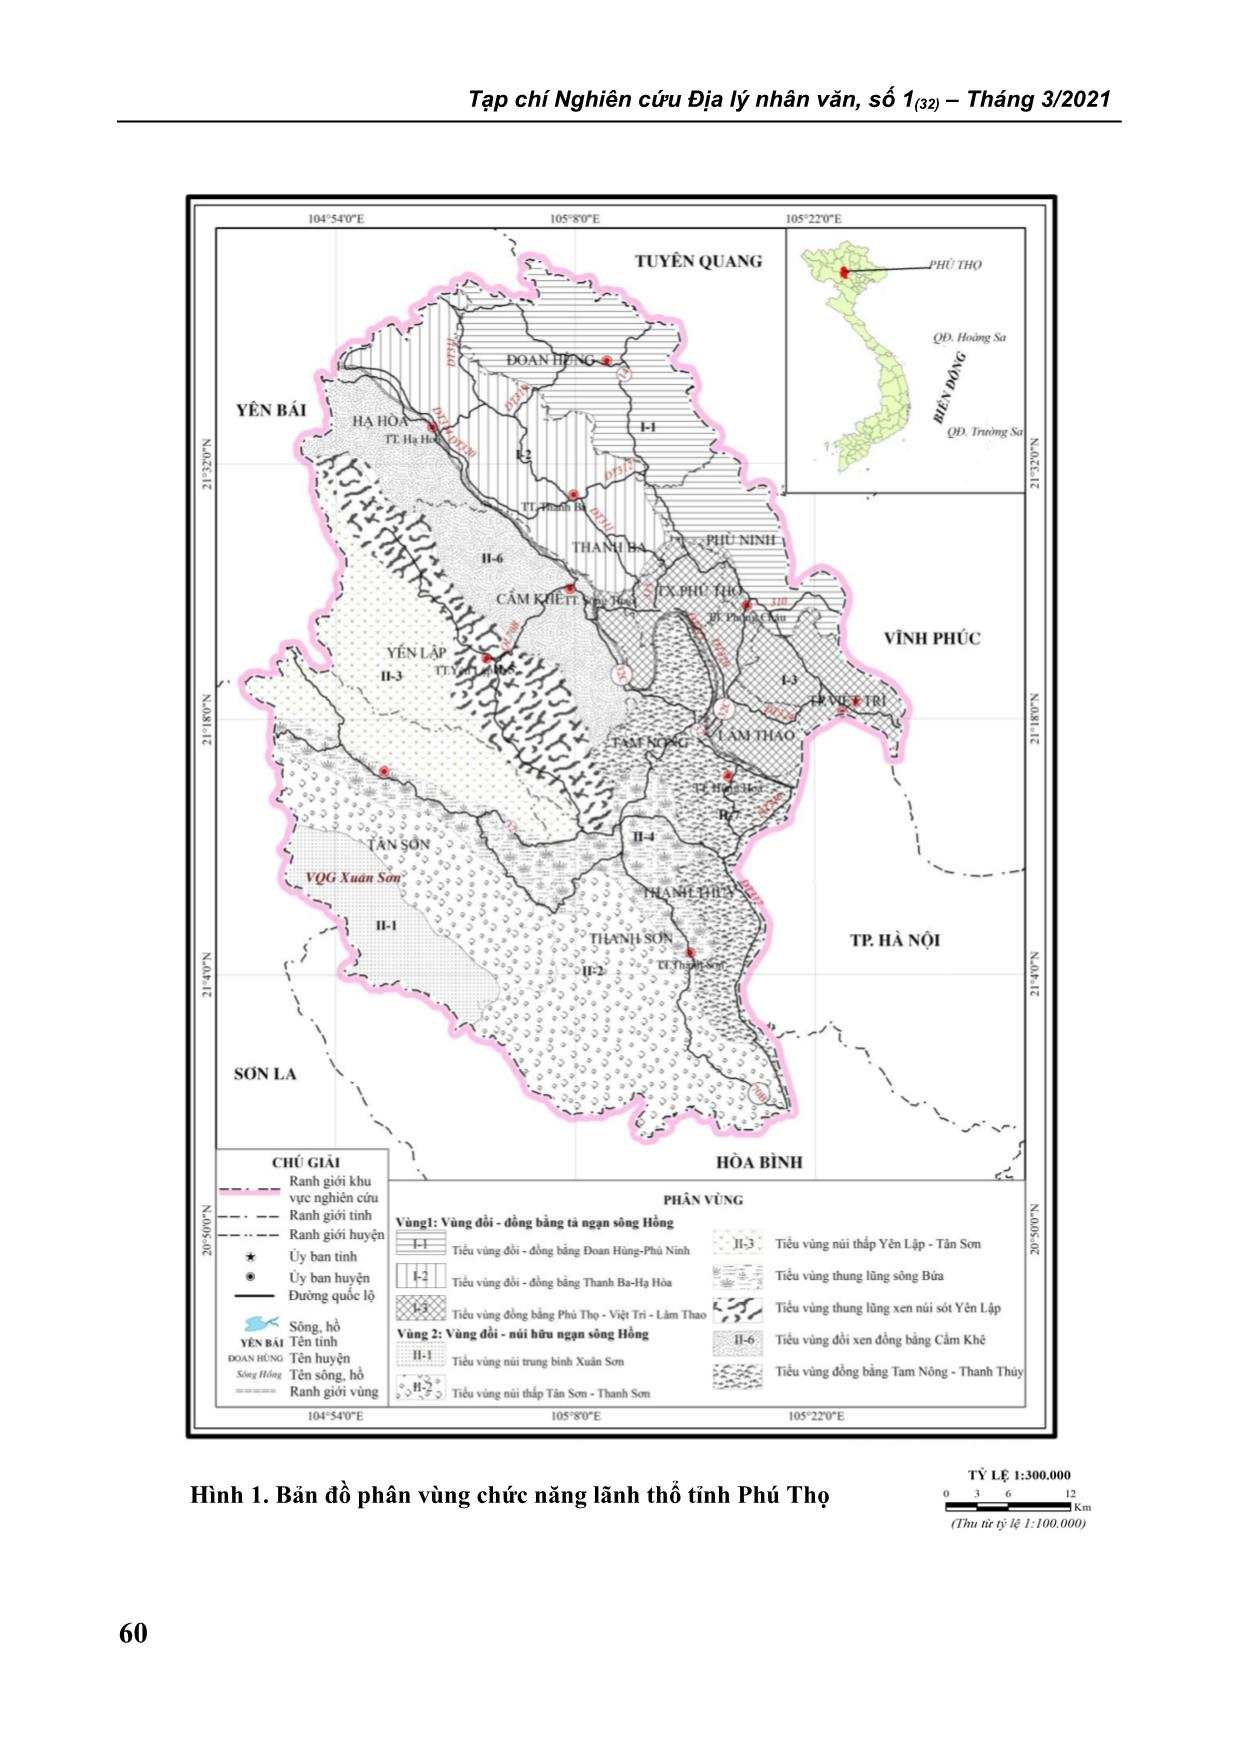 Xác định chức năng của các tiểu vùng phục vụ tổ chức không gian quản lý tài nguyên và môi trường tỉnh Phú Thọ trang 4